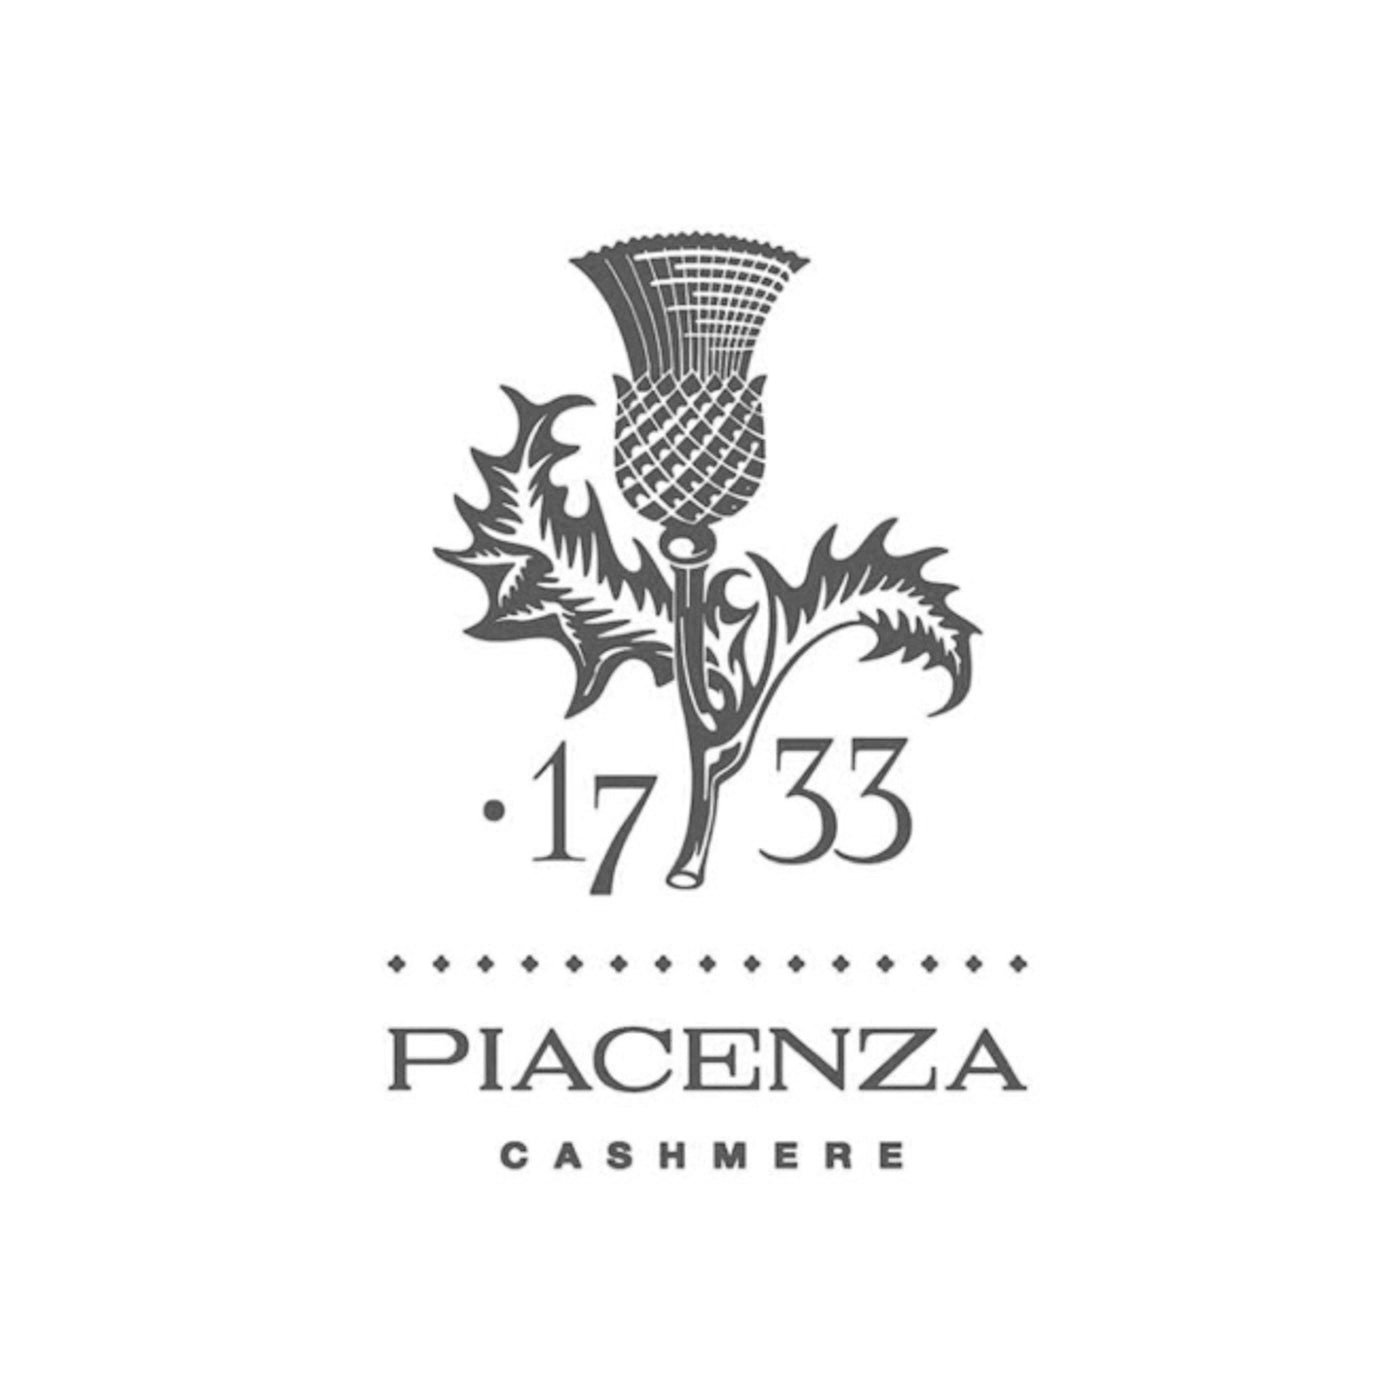 Piacenza-Cashmere_1400x.jpg